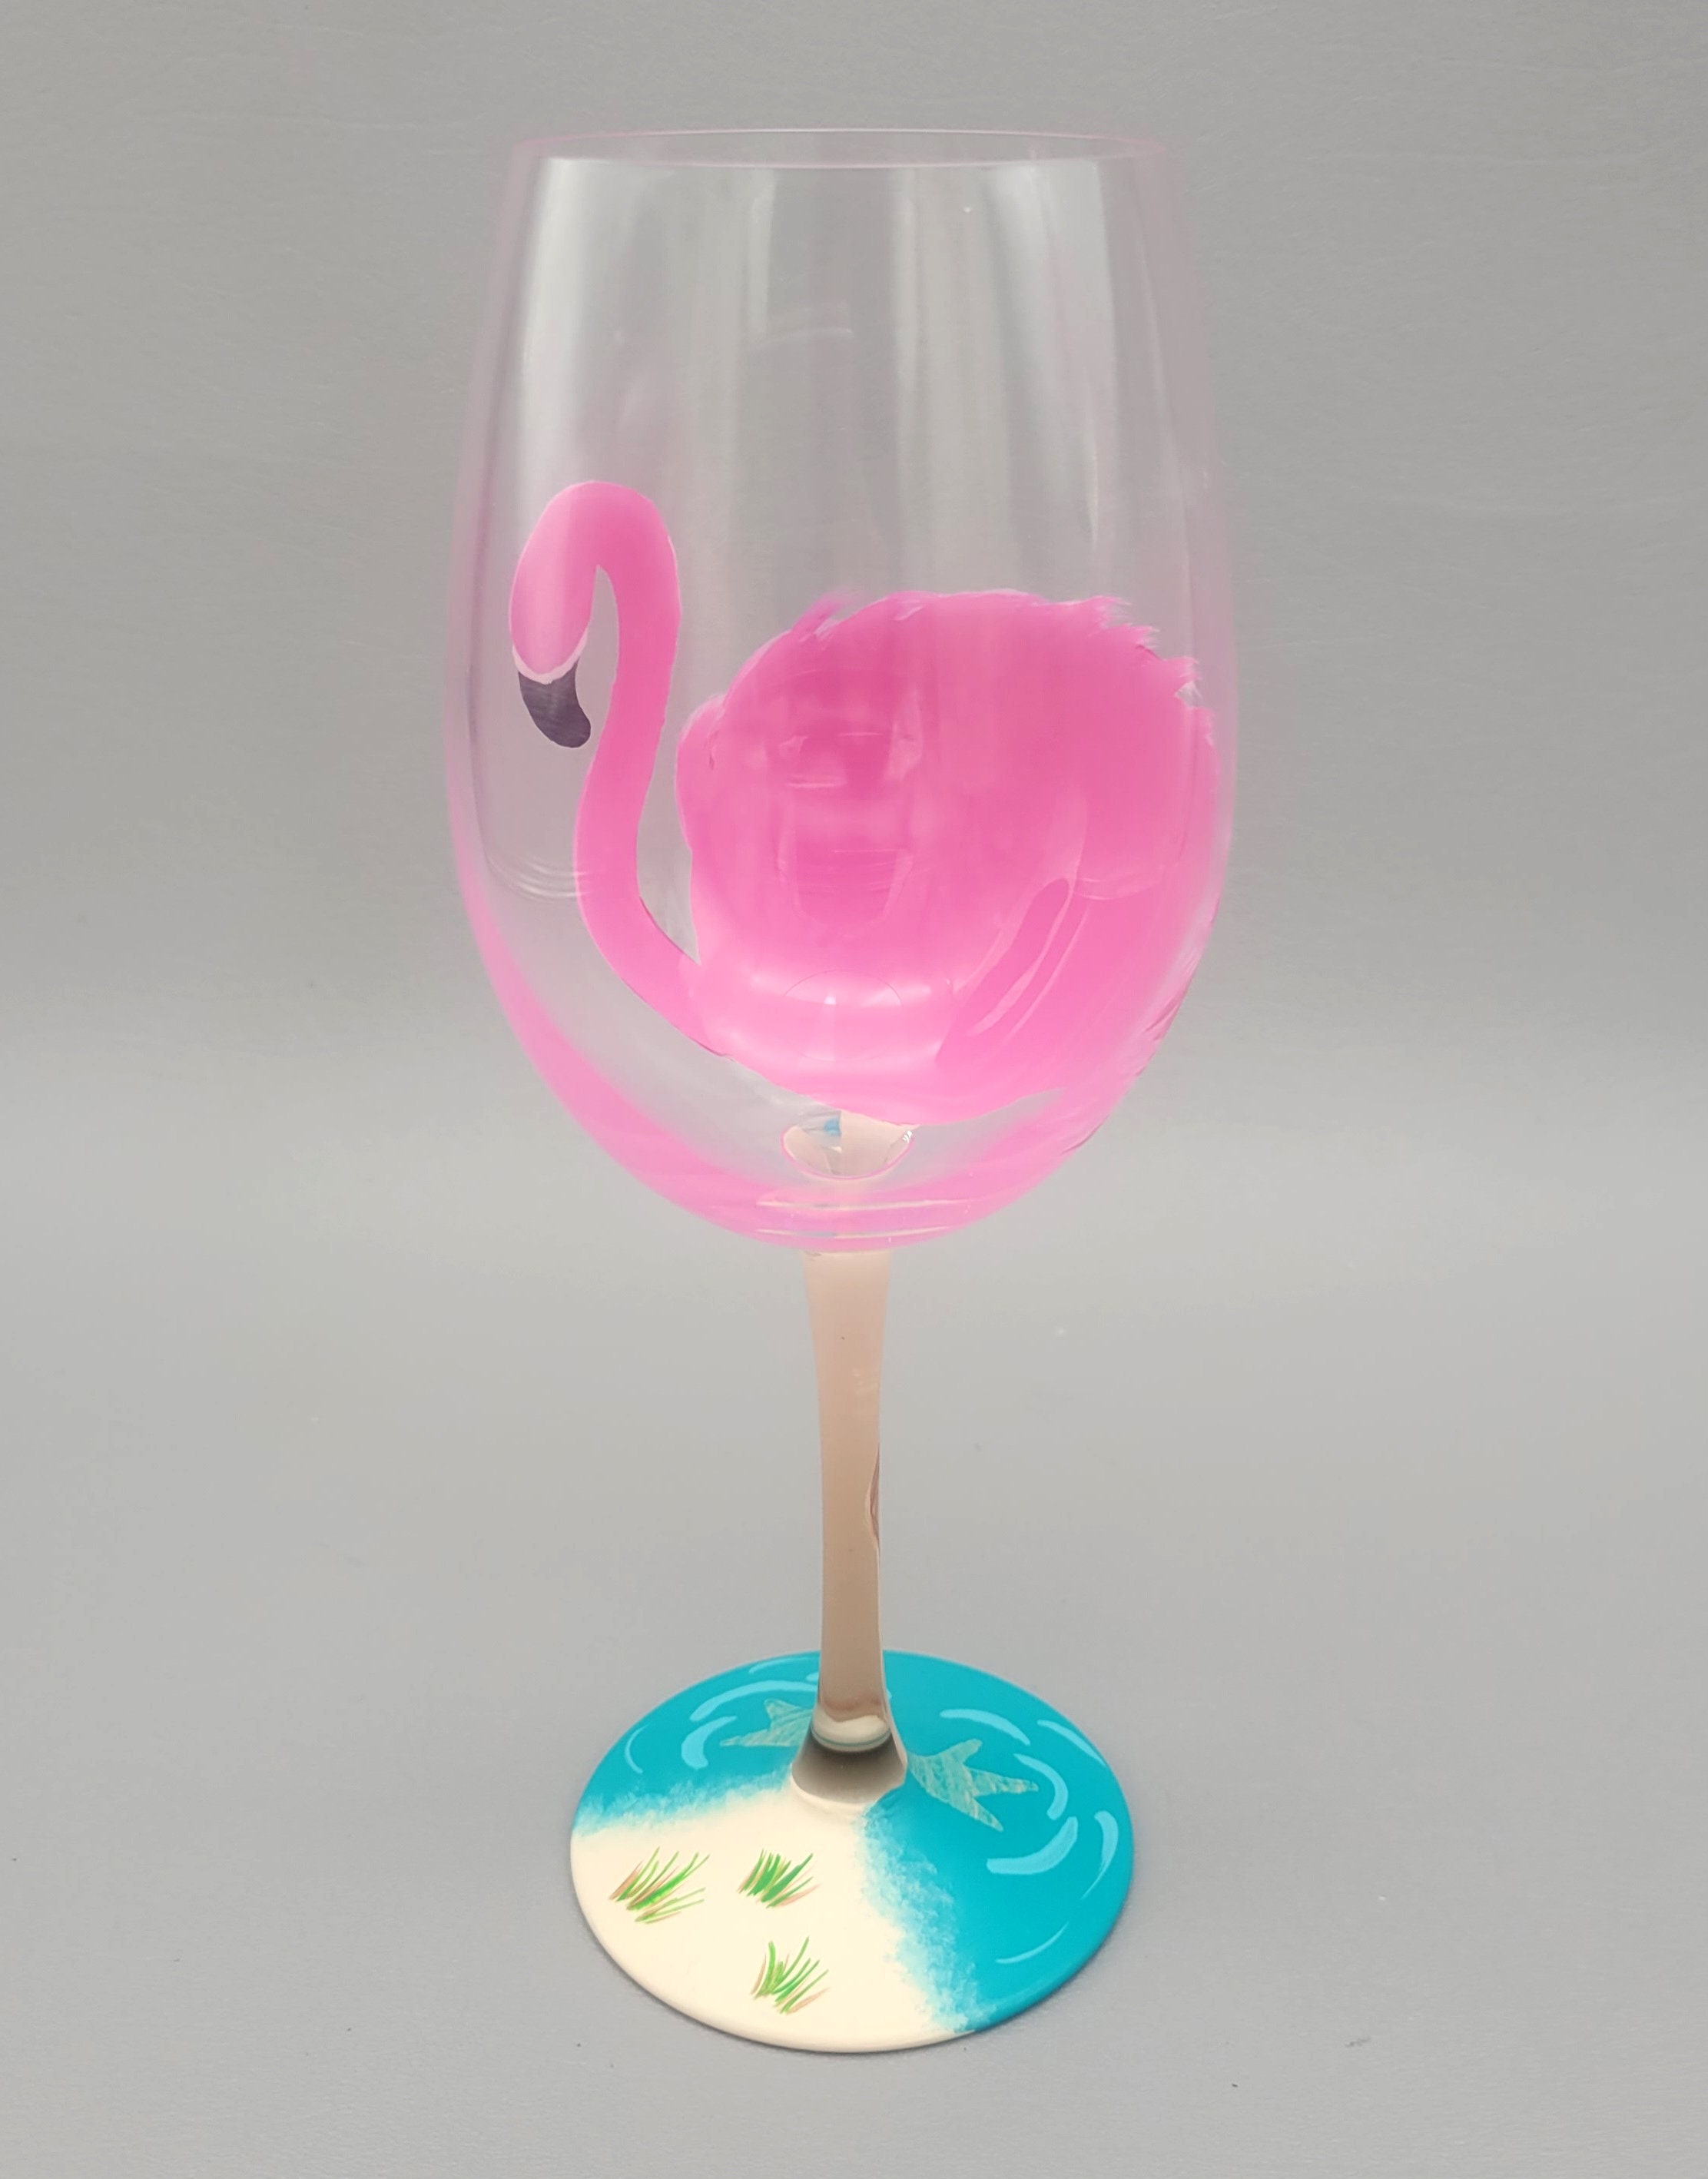 Verre peint à la main, verre à cocktail 'Flamingo' livraison